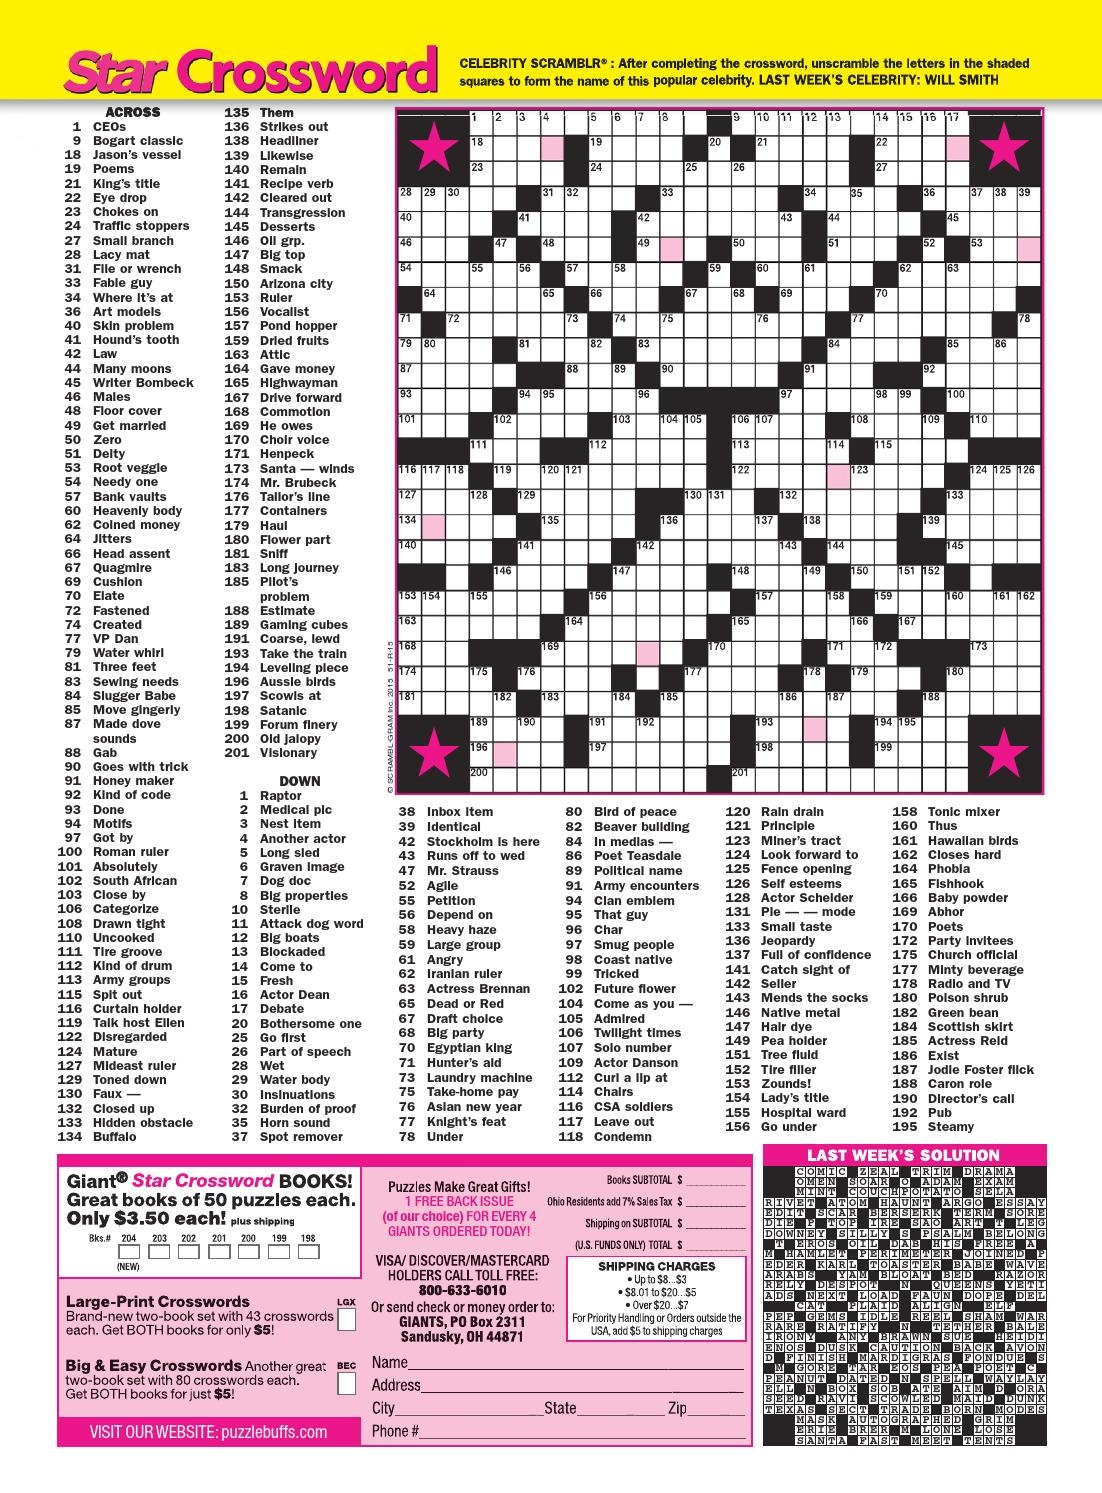 Star Magazine Crossword Puzzle Books Free Crossword Puzzles Printable